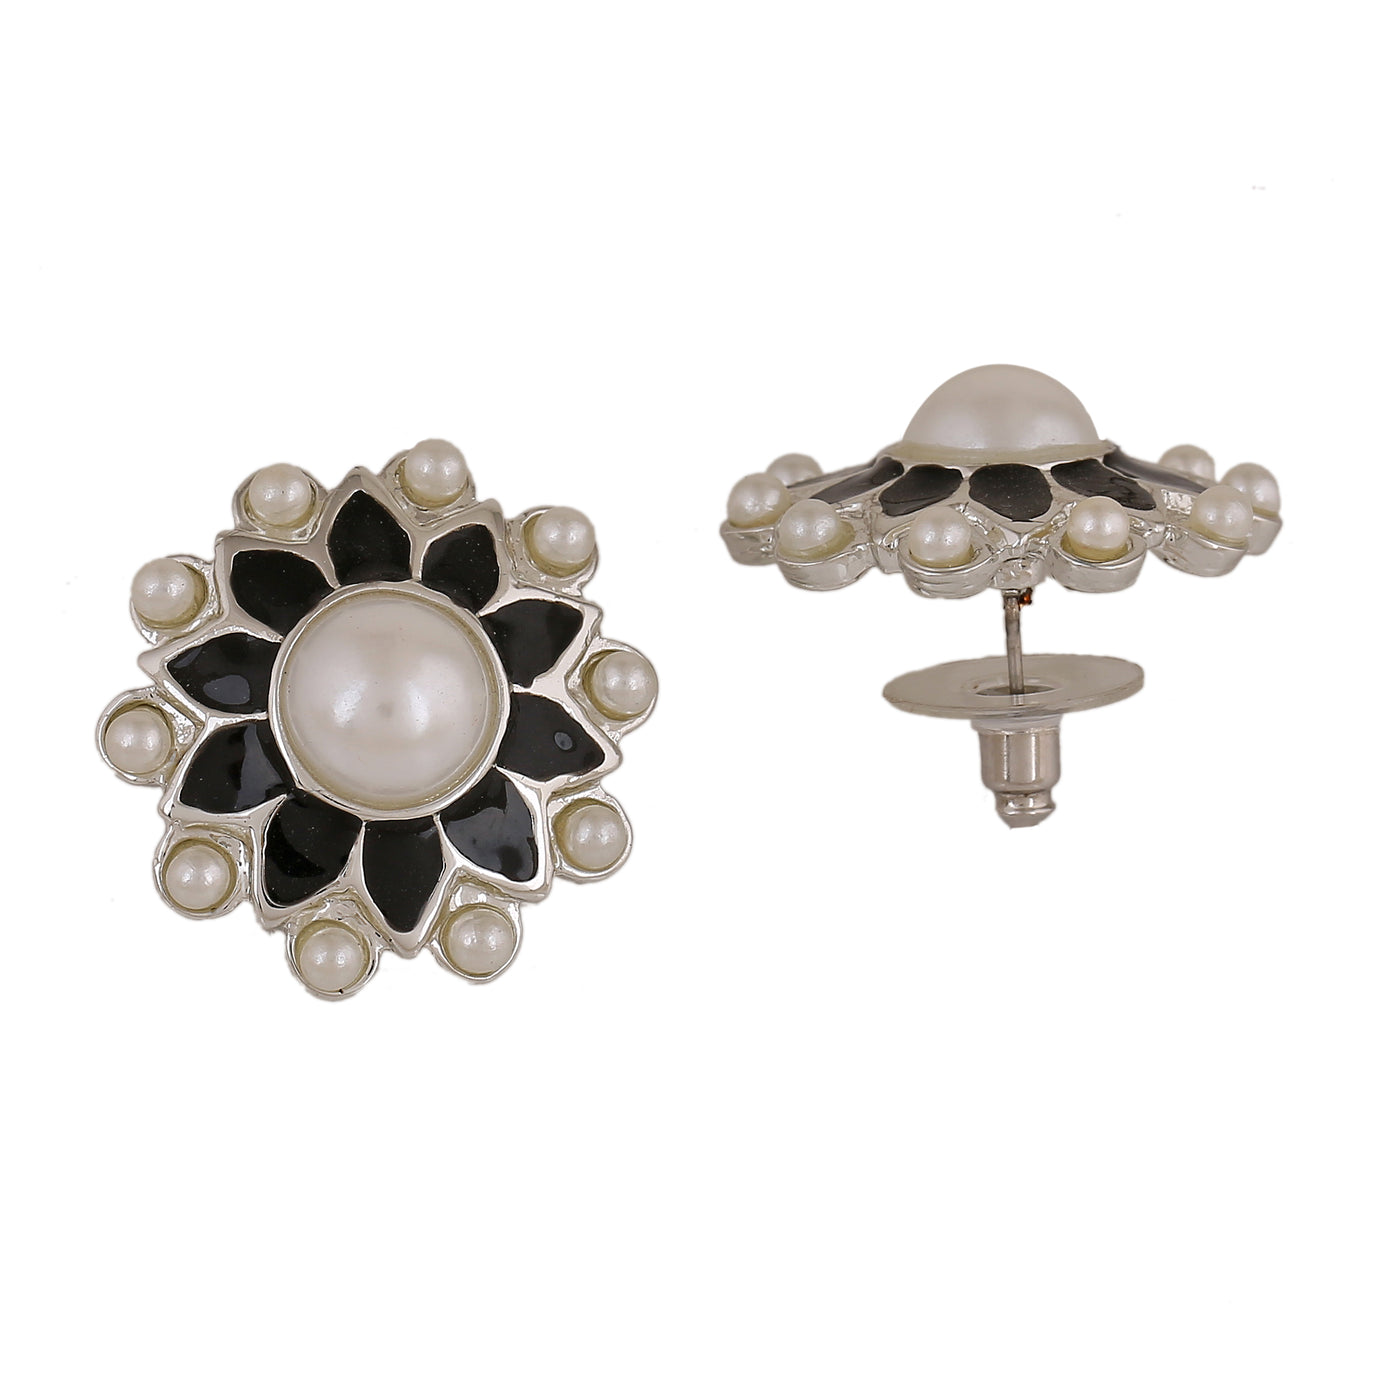 Estele Rhodium Plated Elegant Meenakari Pearl Stud Earrings with Black Enamel for Women